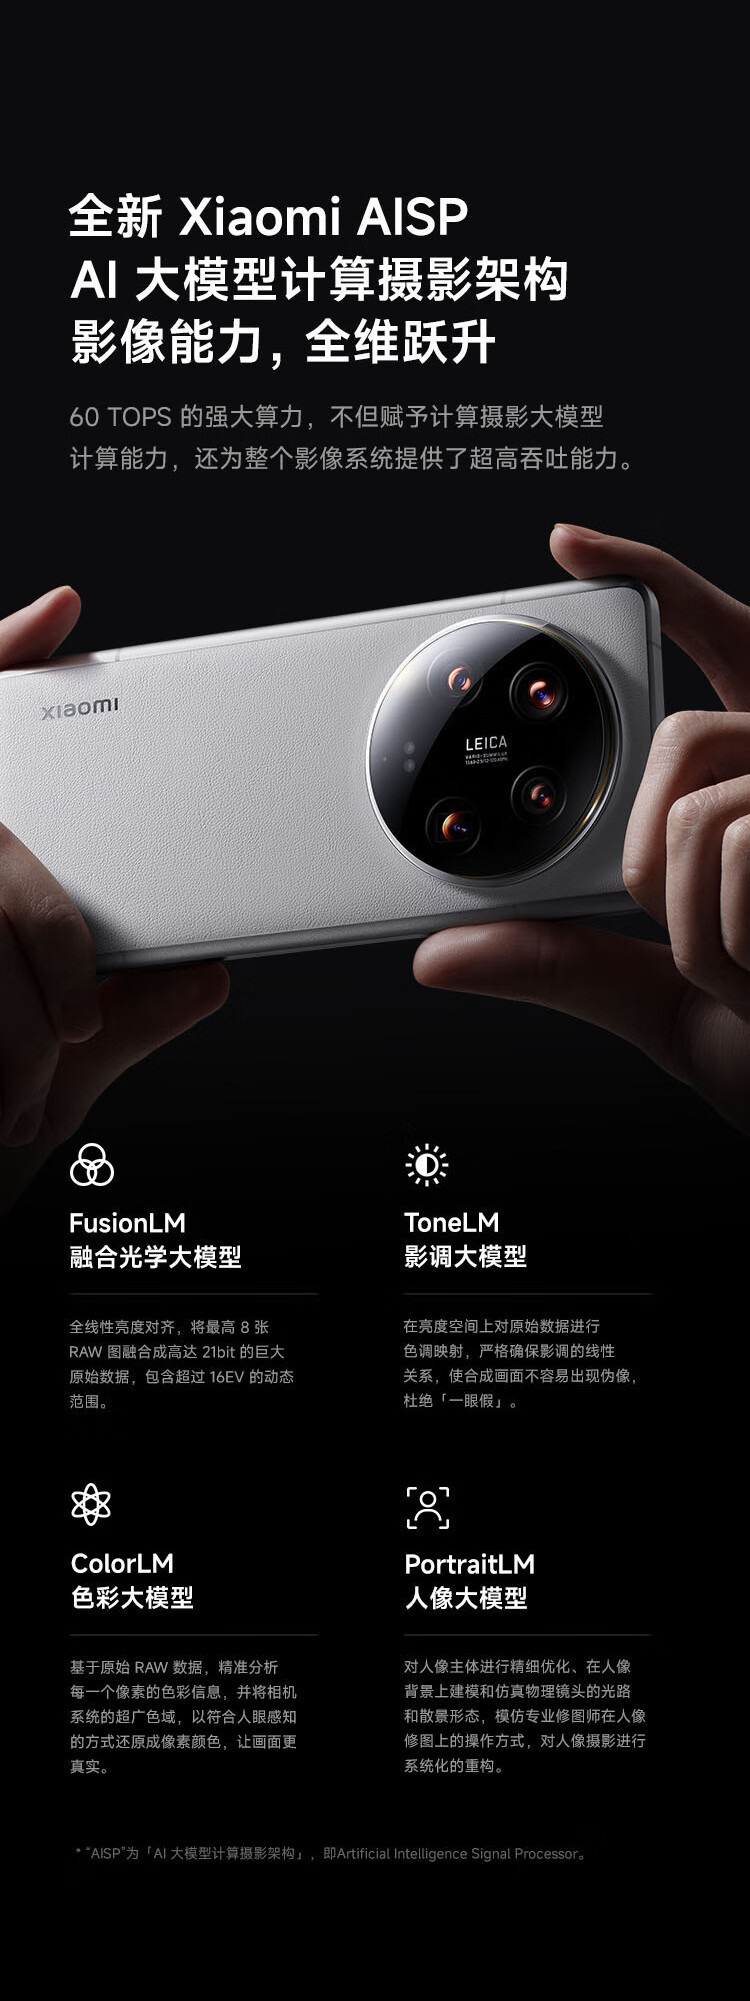 小米/MIUI Xiaomi 14Ultra双向卫星通信 小米澎湃OS 5G